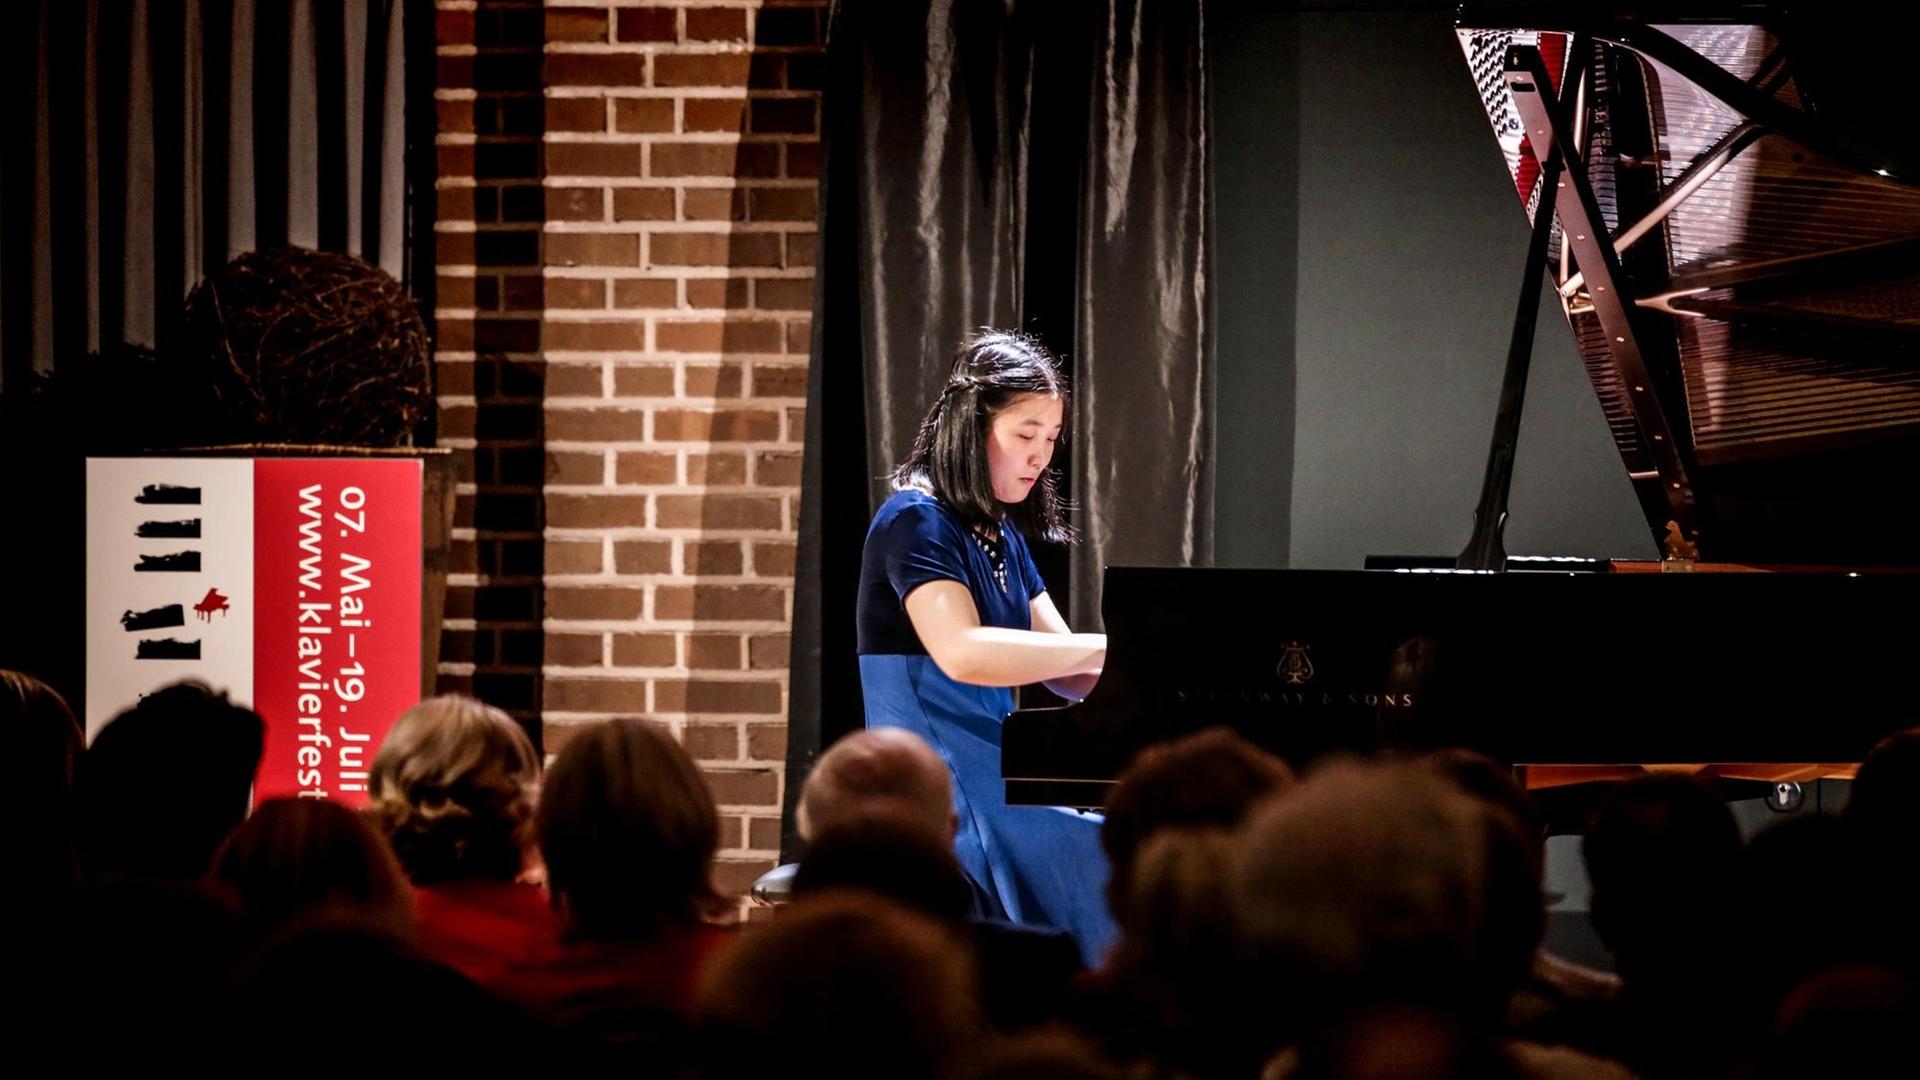 Eine Pianistin im blauen Kleid sitzt an einem Flügel. Sie blickt konzentriert auf die Tasten. Es ist Lauren Zhang. Sie spielte am 9. Mai 2019 in Bochum, in der Alten Lohnhalle.